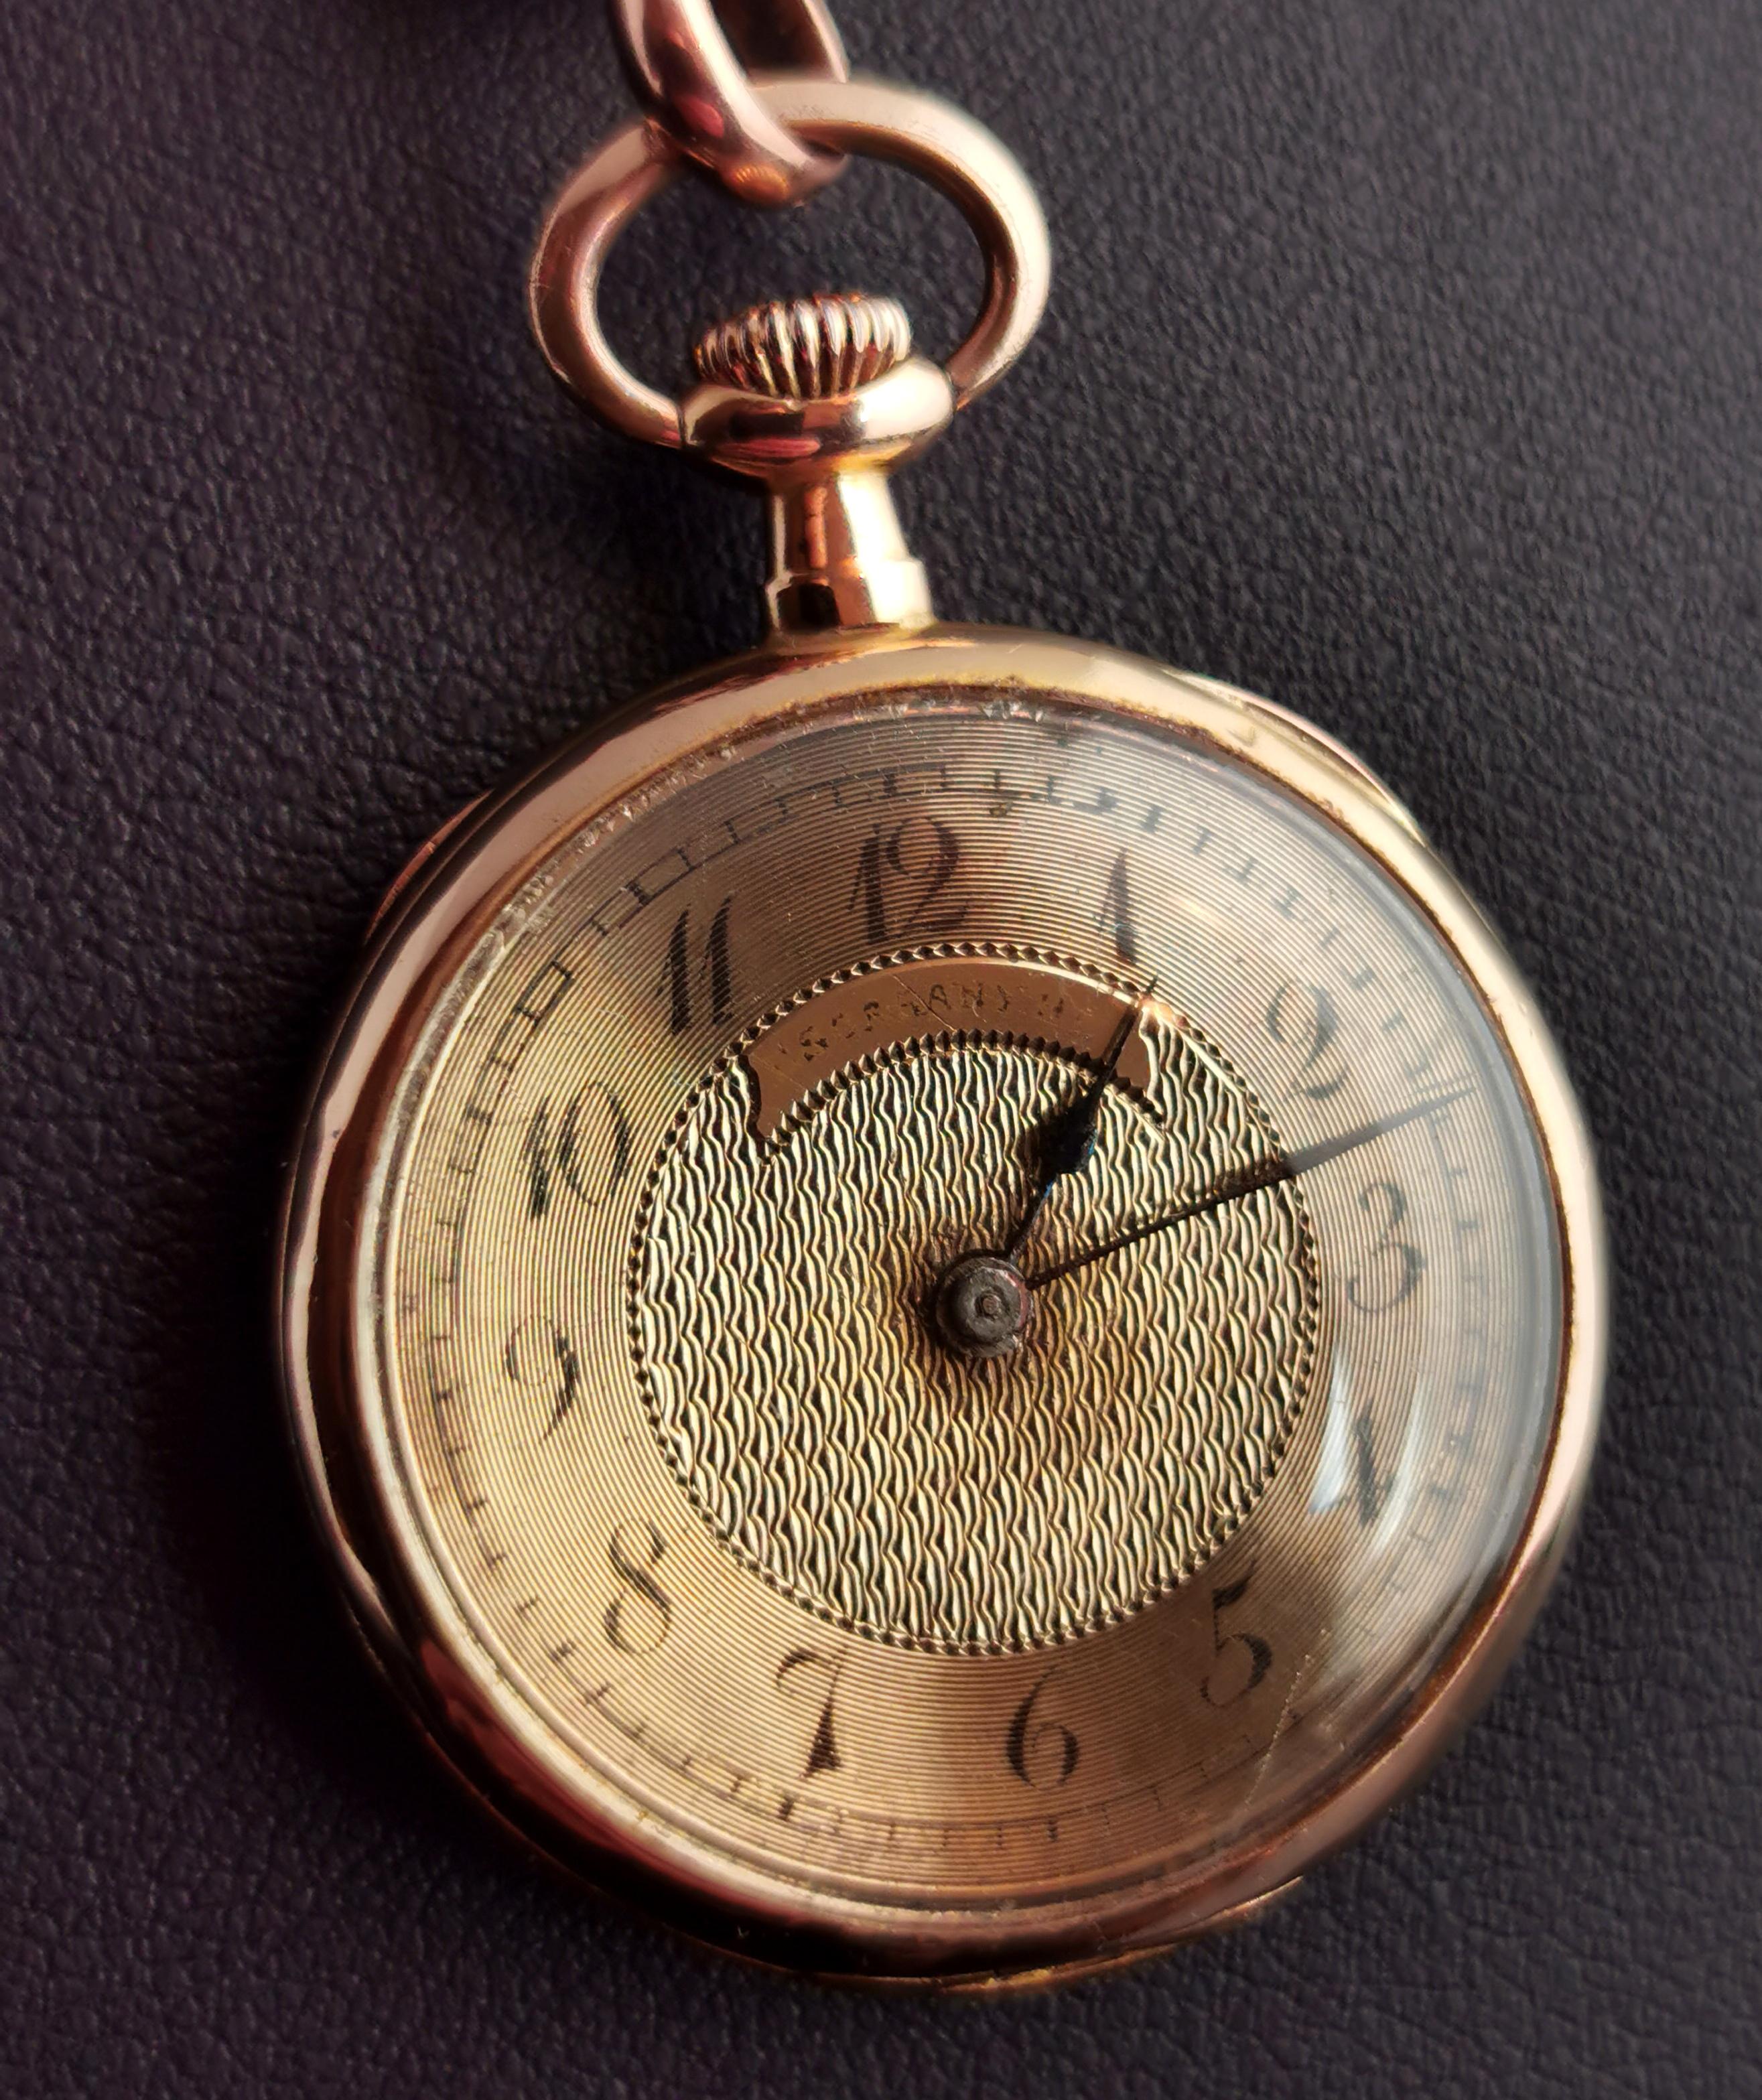 Eine wirklich spektakuläre antike Art Nouveau Ära, 18kt Gold und Rose geschliffenen Diamanten Taschenuhr oder Anhänger Uhr.

Ein reichhaltiges, glatt poliertes 18-karätiges Goldgehäuse, das auf der Rückseite mit einem typisch jugendstiligen,